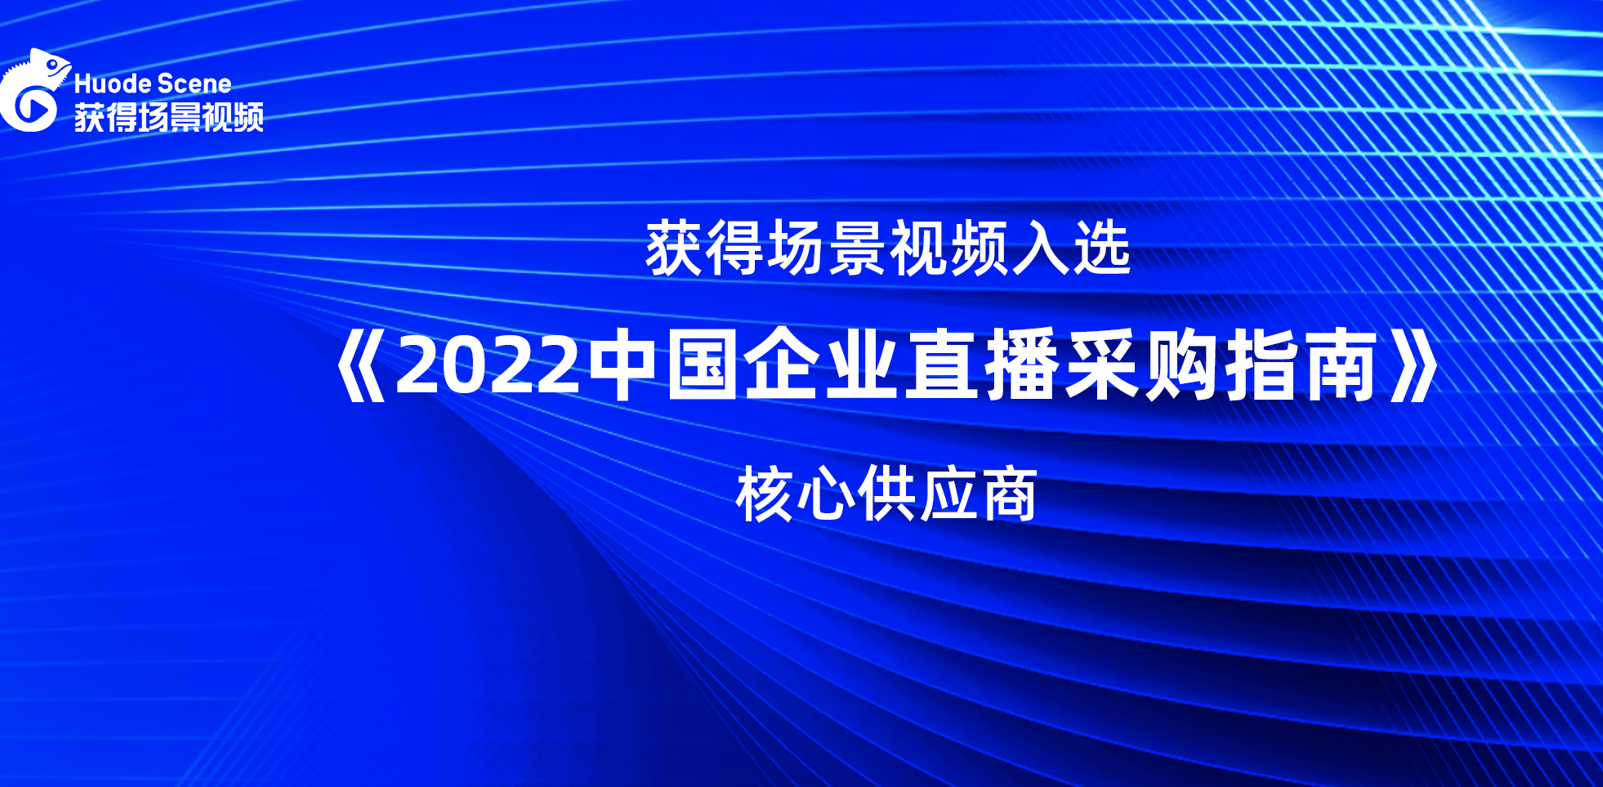 获得场景视频入选《2022中国企业直播采购指南》核心供应商